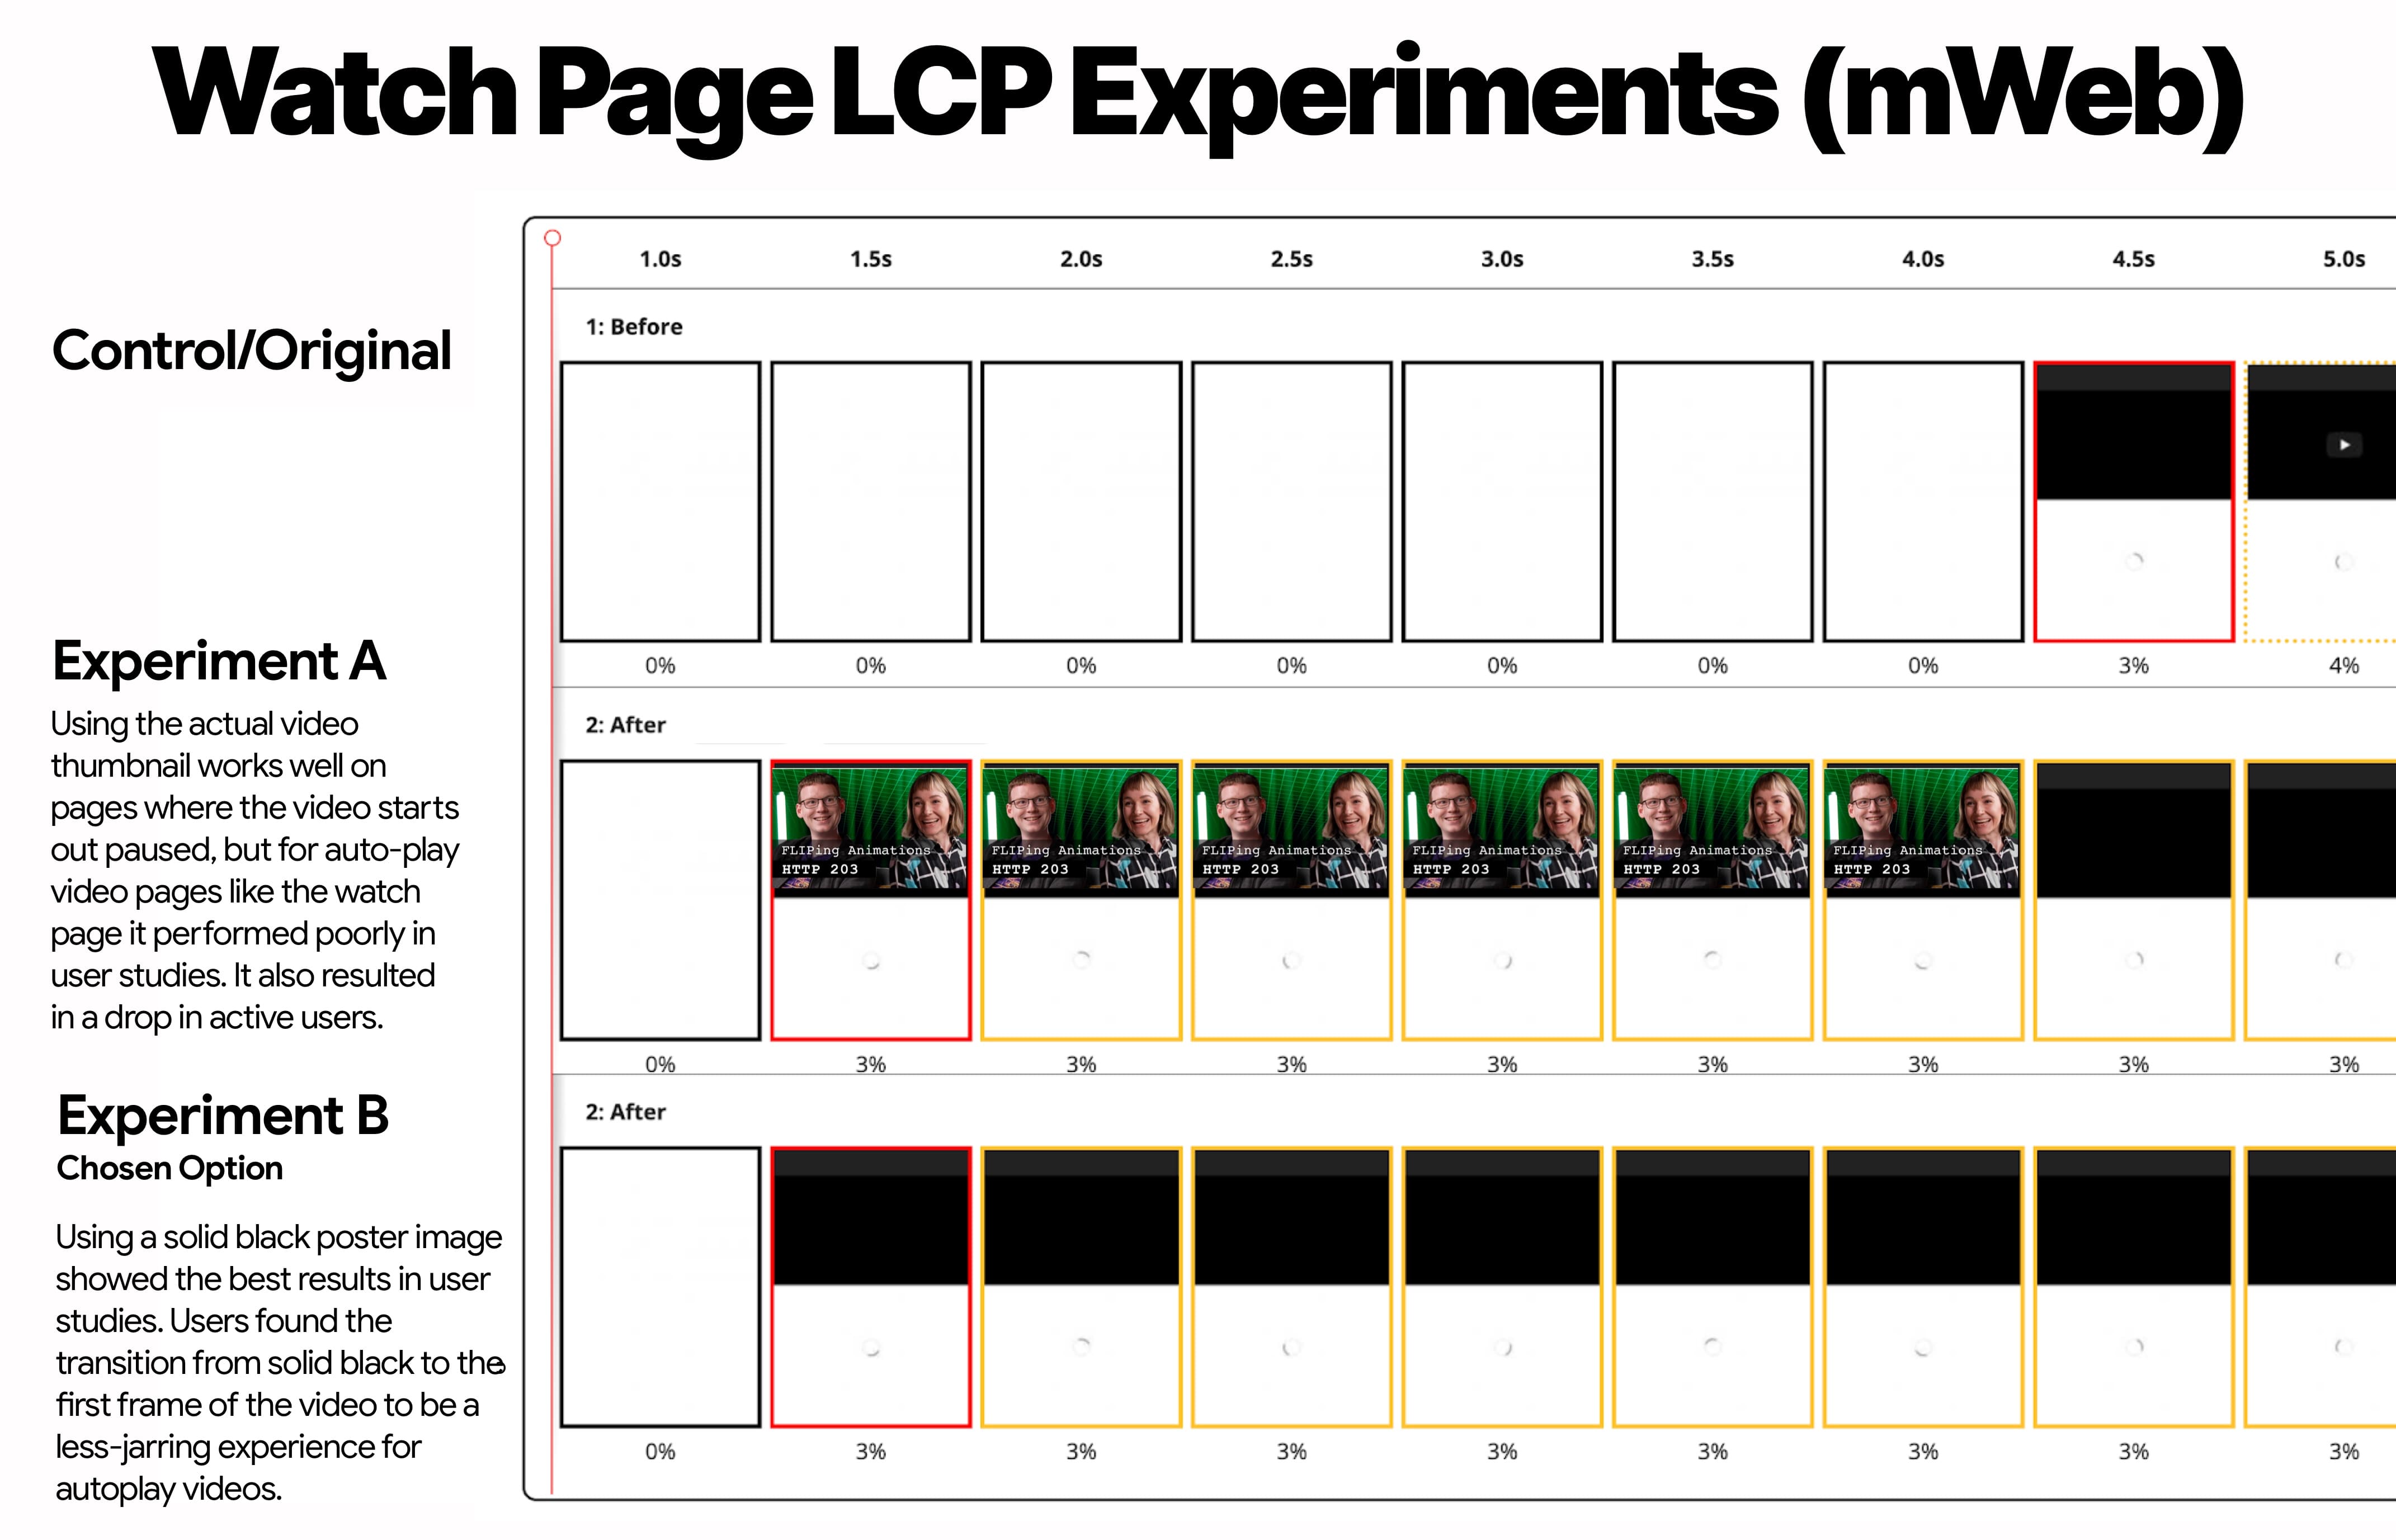 Страница просмотра LCP Experiment для мобильного Интернета, на которой показаны контрольный элемент, эксперимент A (миниатюра изображения) и эксперимент B (черная миниатюра)